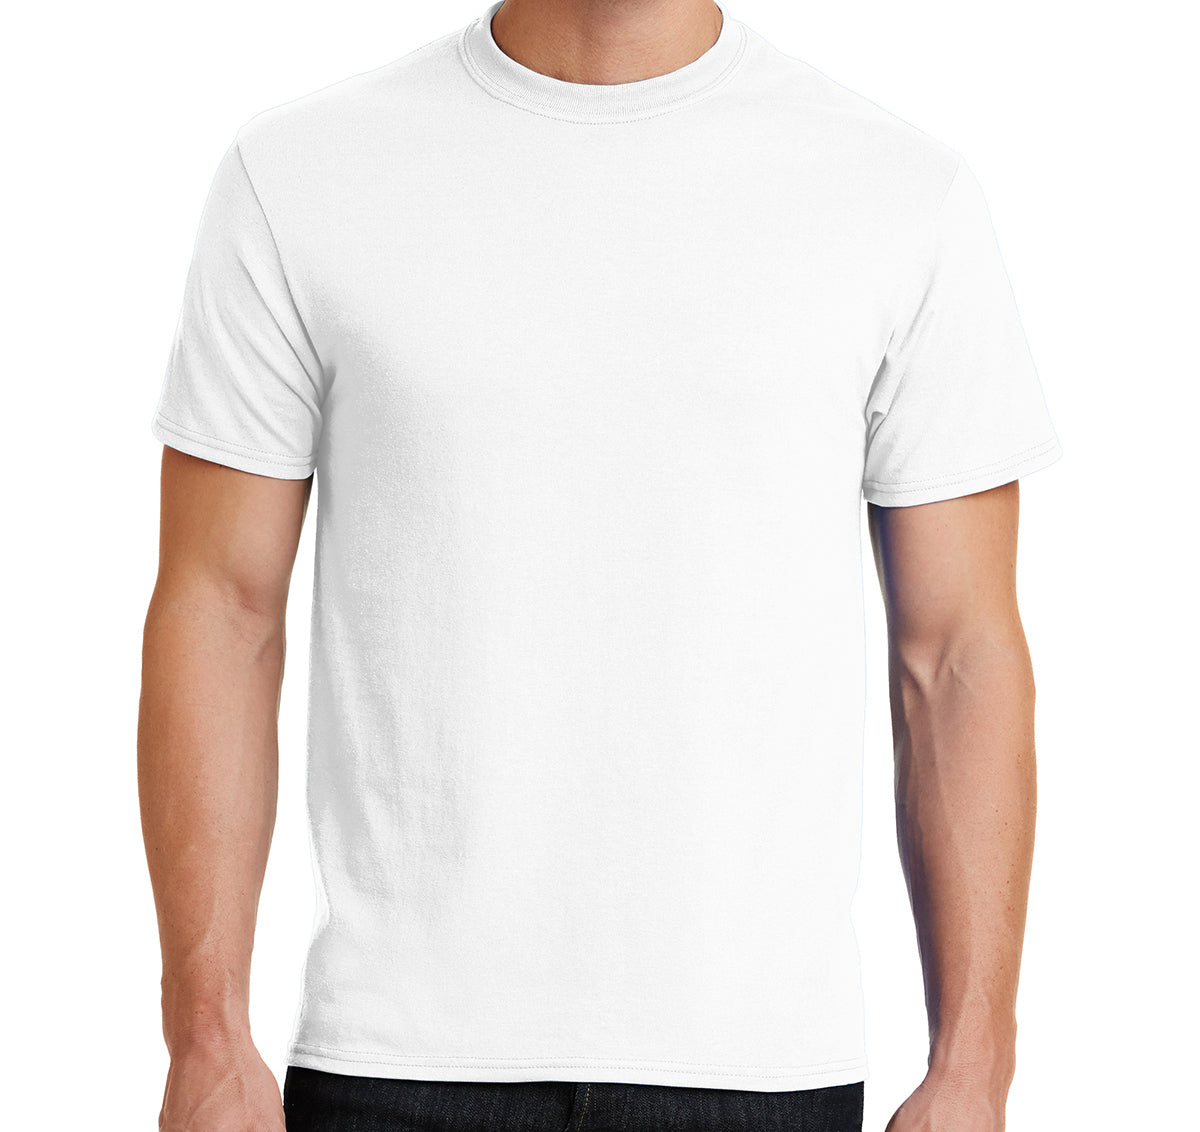 White Tshirt (50 Pack)